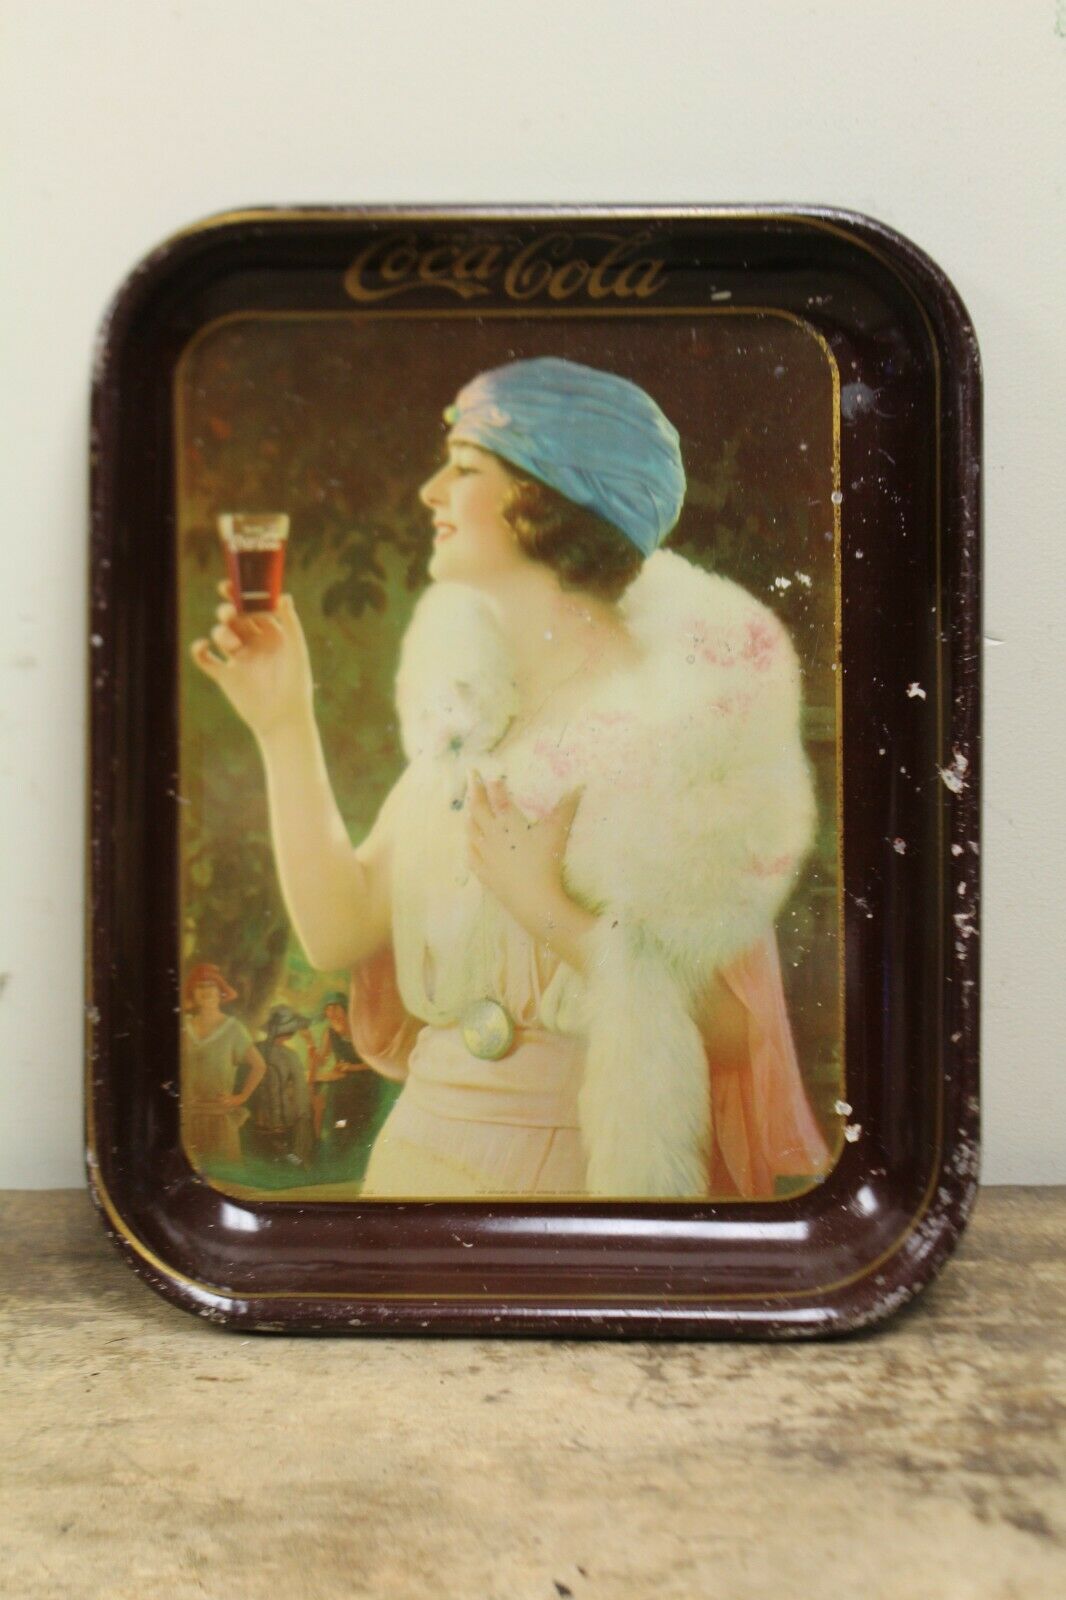 Original Vintage Coca Cola Tray Party Girl 1925 Coshocton Usa American